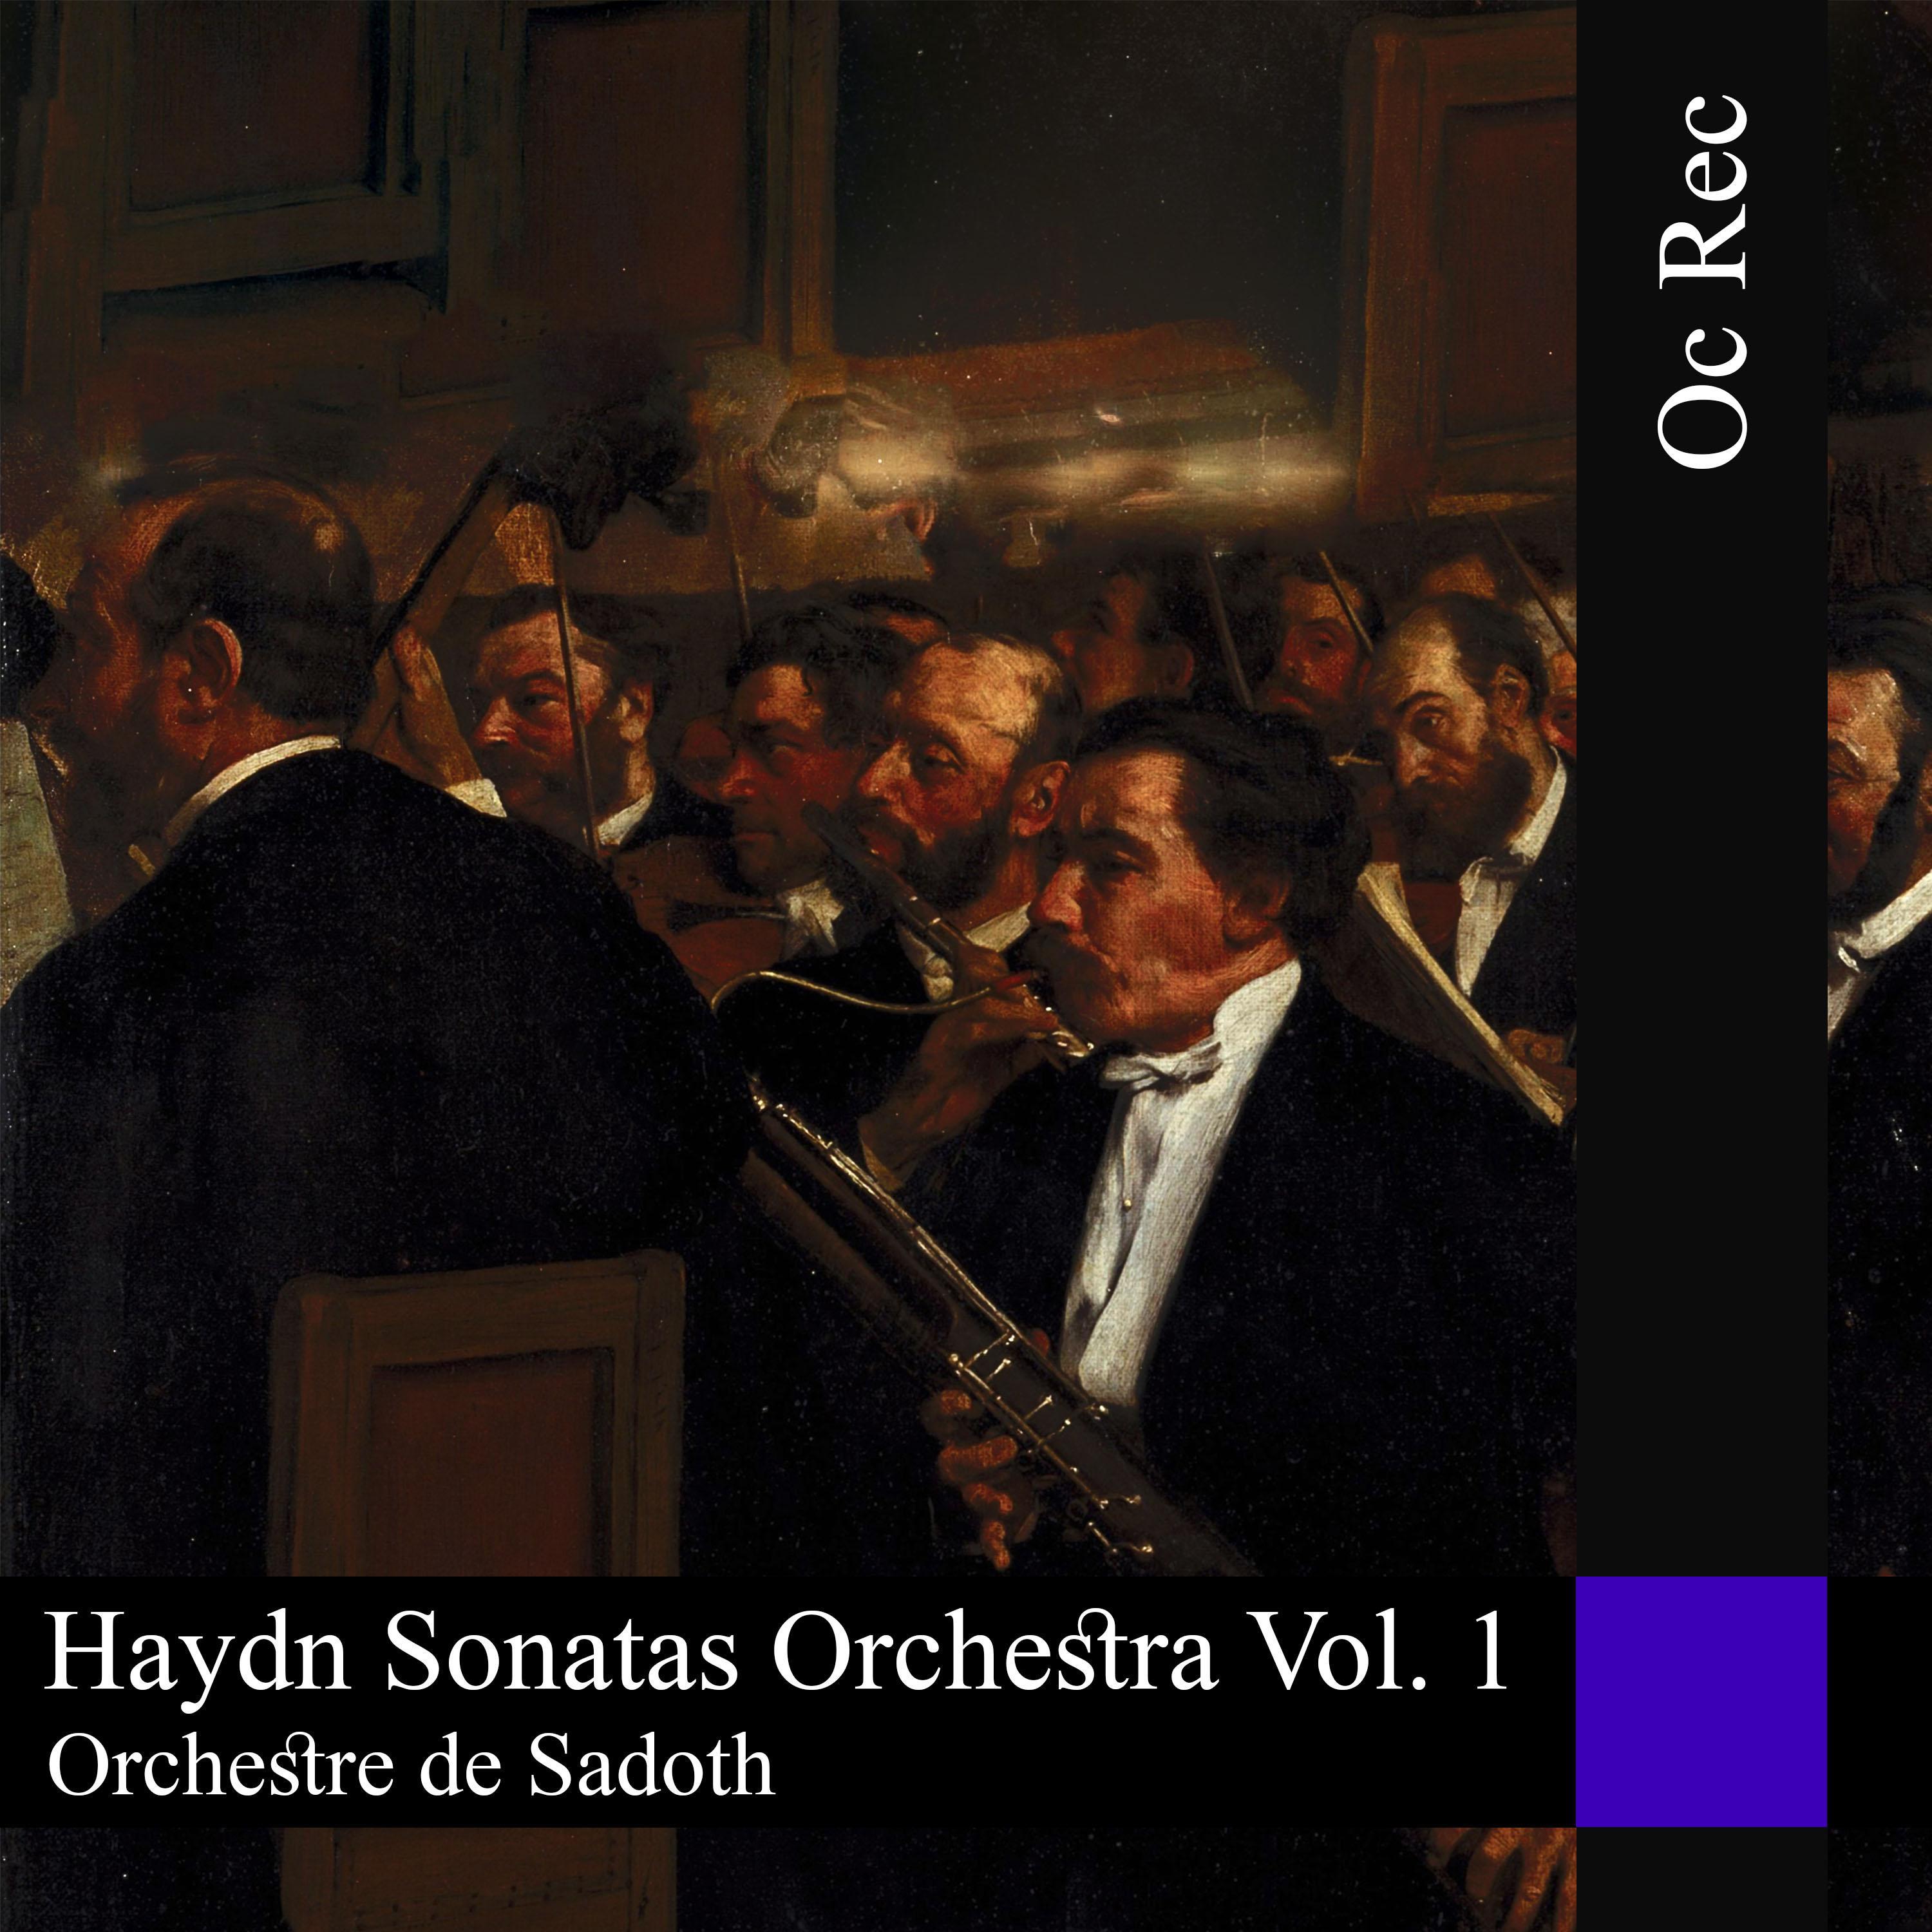 Sonatas Orchestra Vol. 1